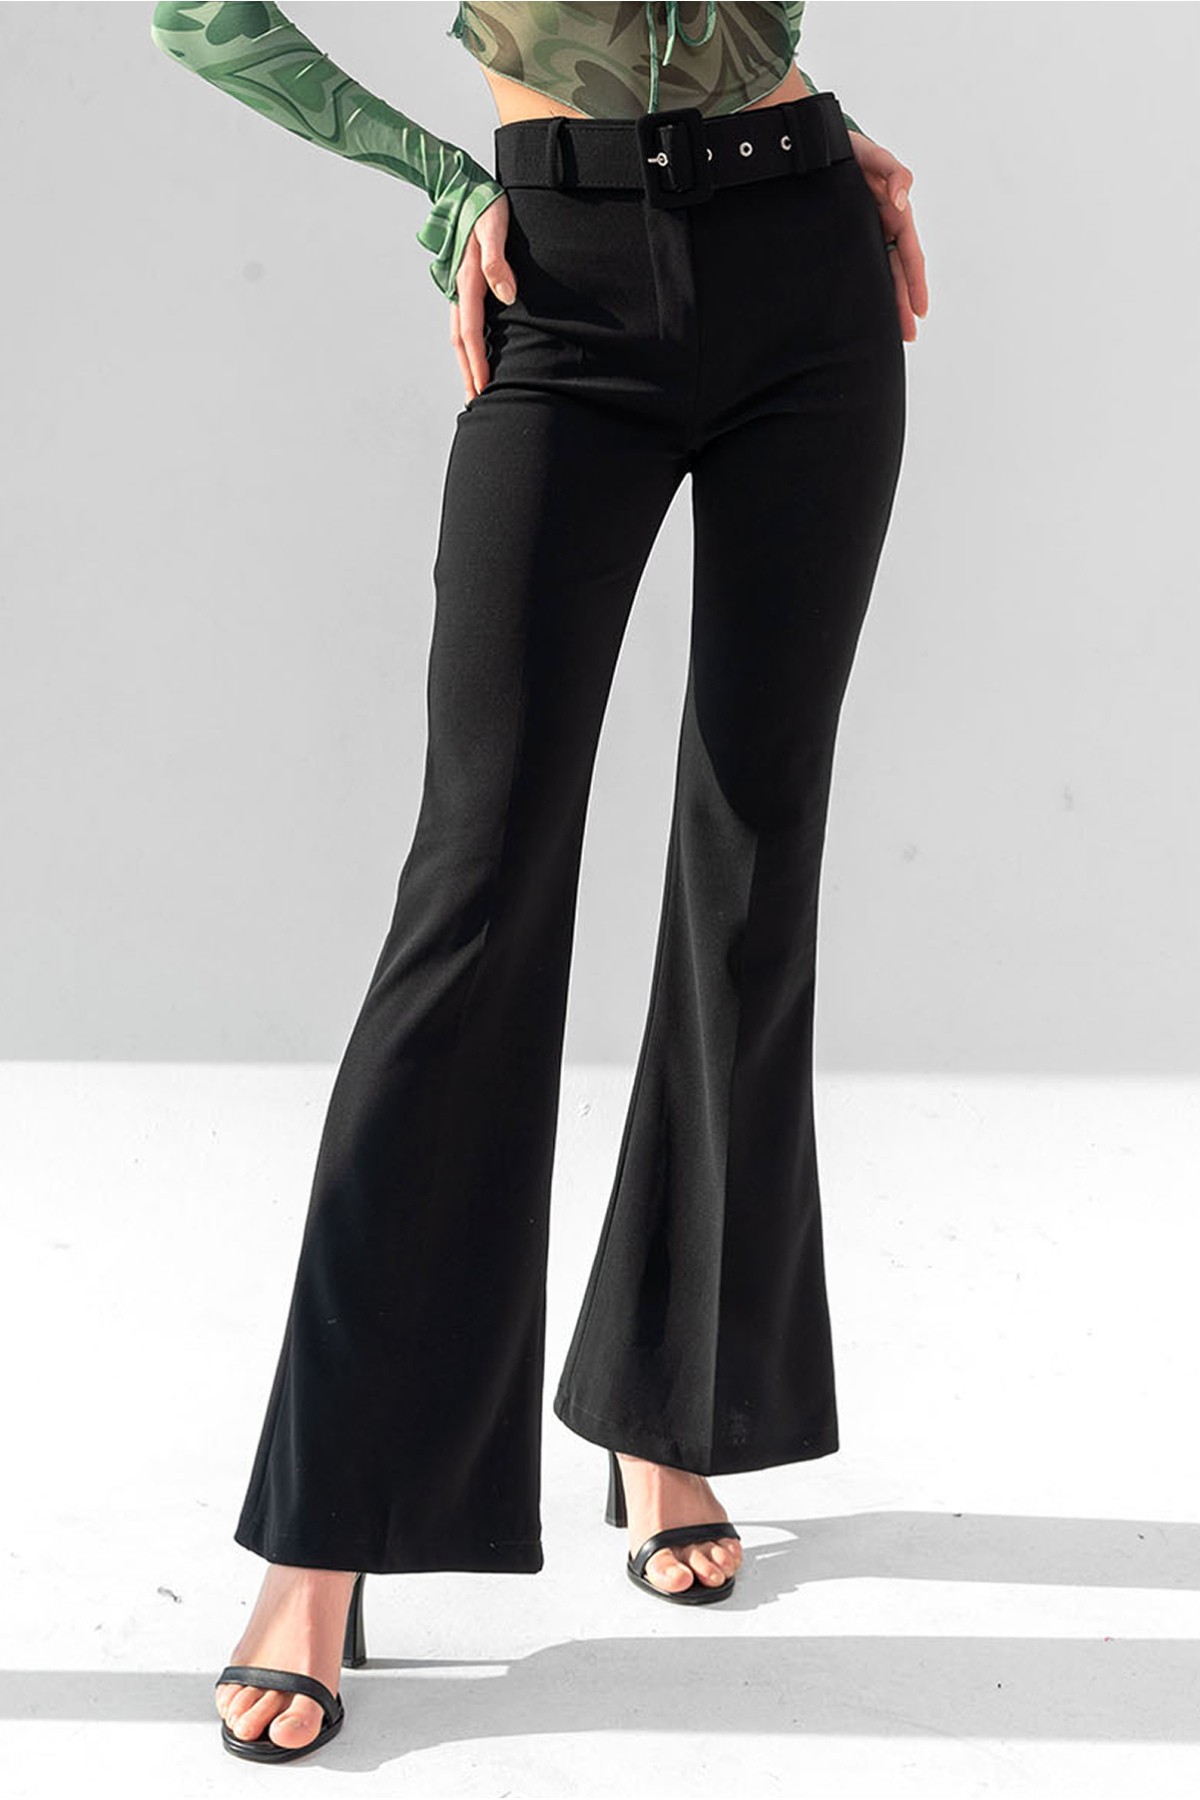 Pantalón de mujer de tiro alto con cinturón y pernera ancha - Negra